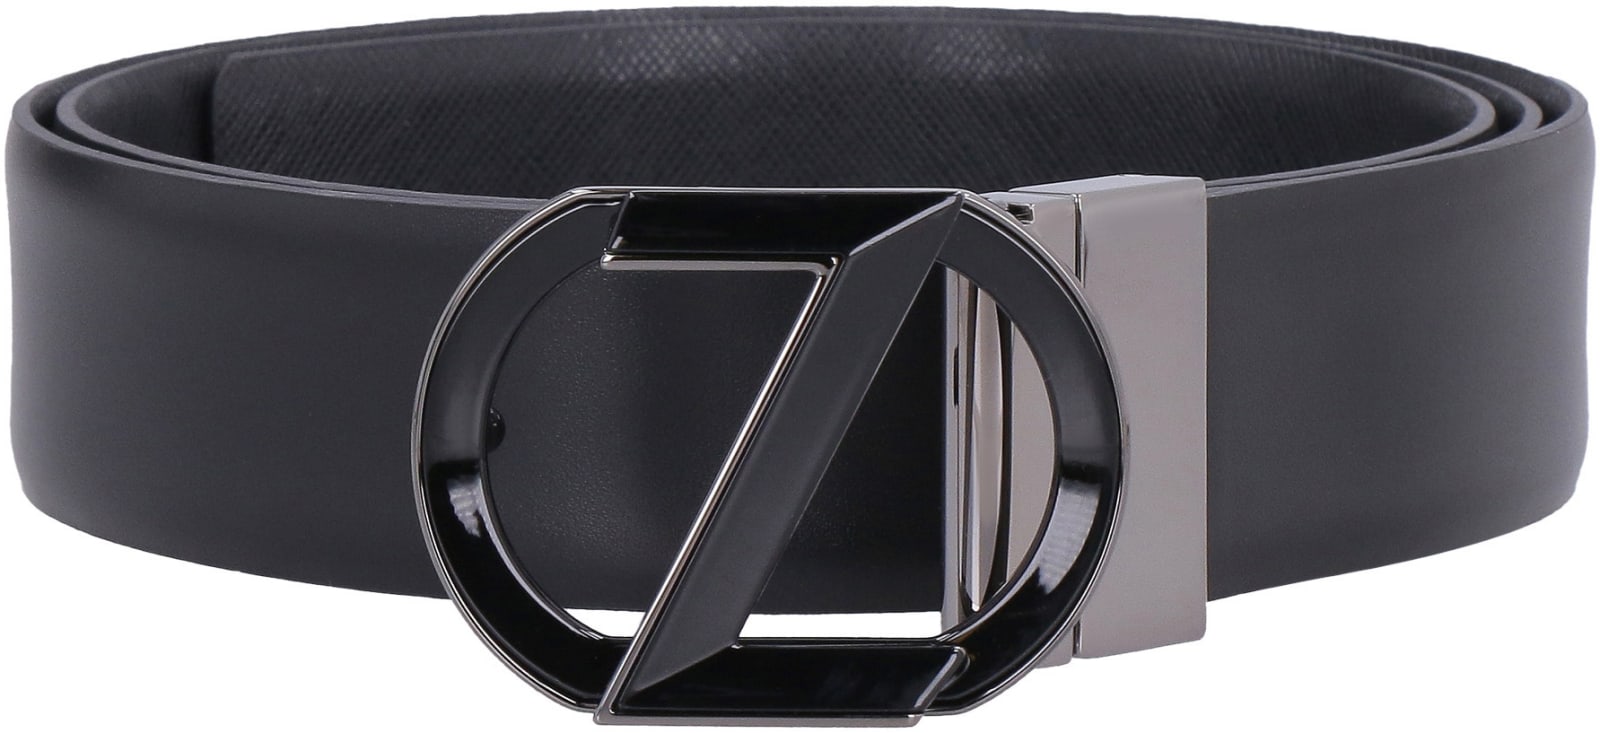 Shop Z Zegna Reversible Leather Belt In Black